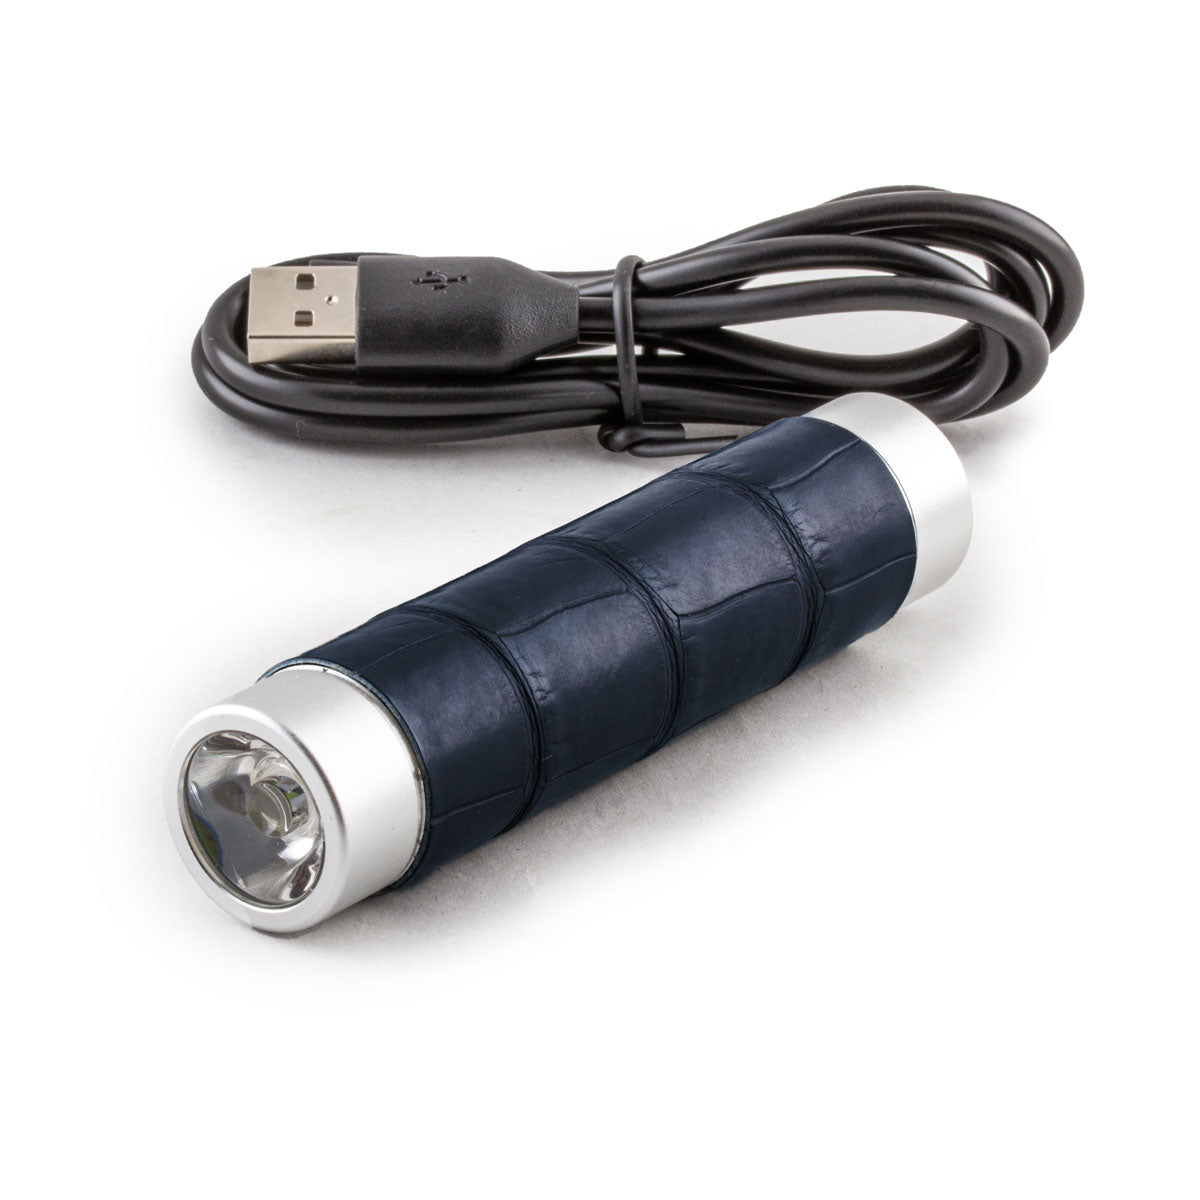 Mini batterie externe & lampes de poche - Alligator - Chargeur universel iPhone , Samsung , smartphone, tablette... ( noir, marron, gris)